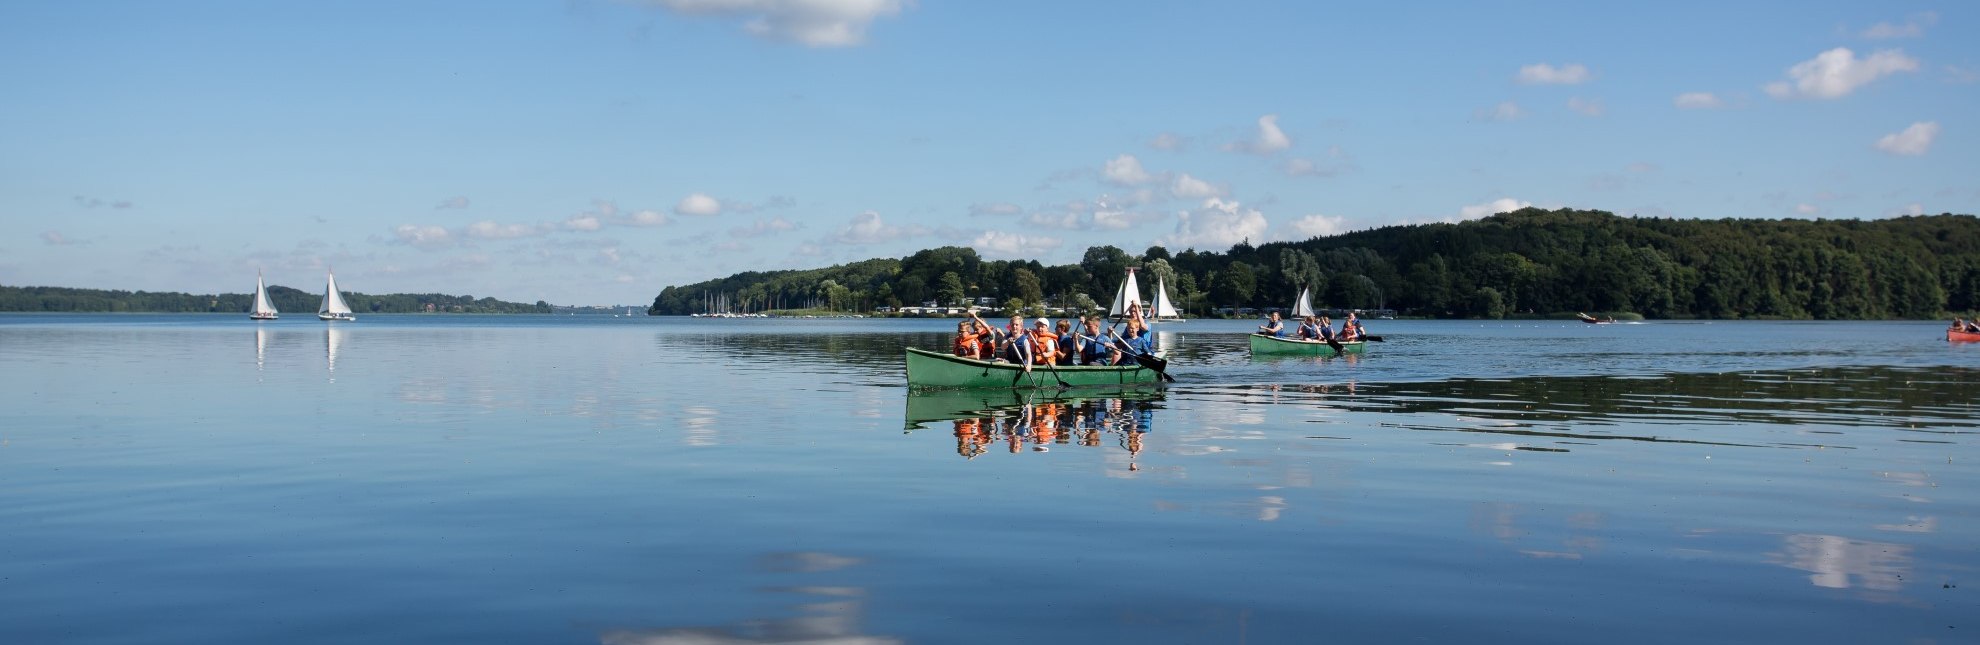 Kanuwandern auf dem Ratzeburger See, © Tourist-Information Ratzeburg/ Jens Butz